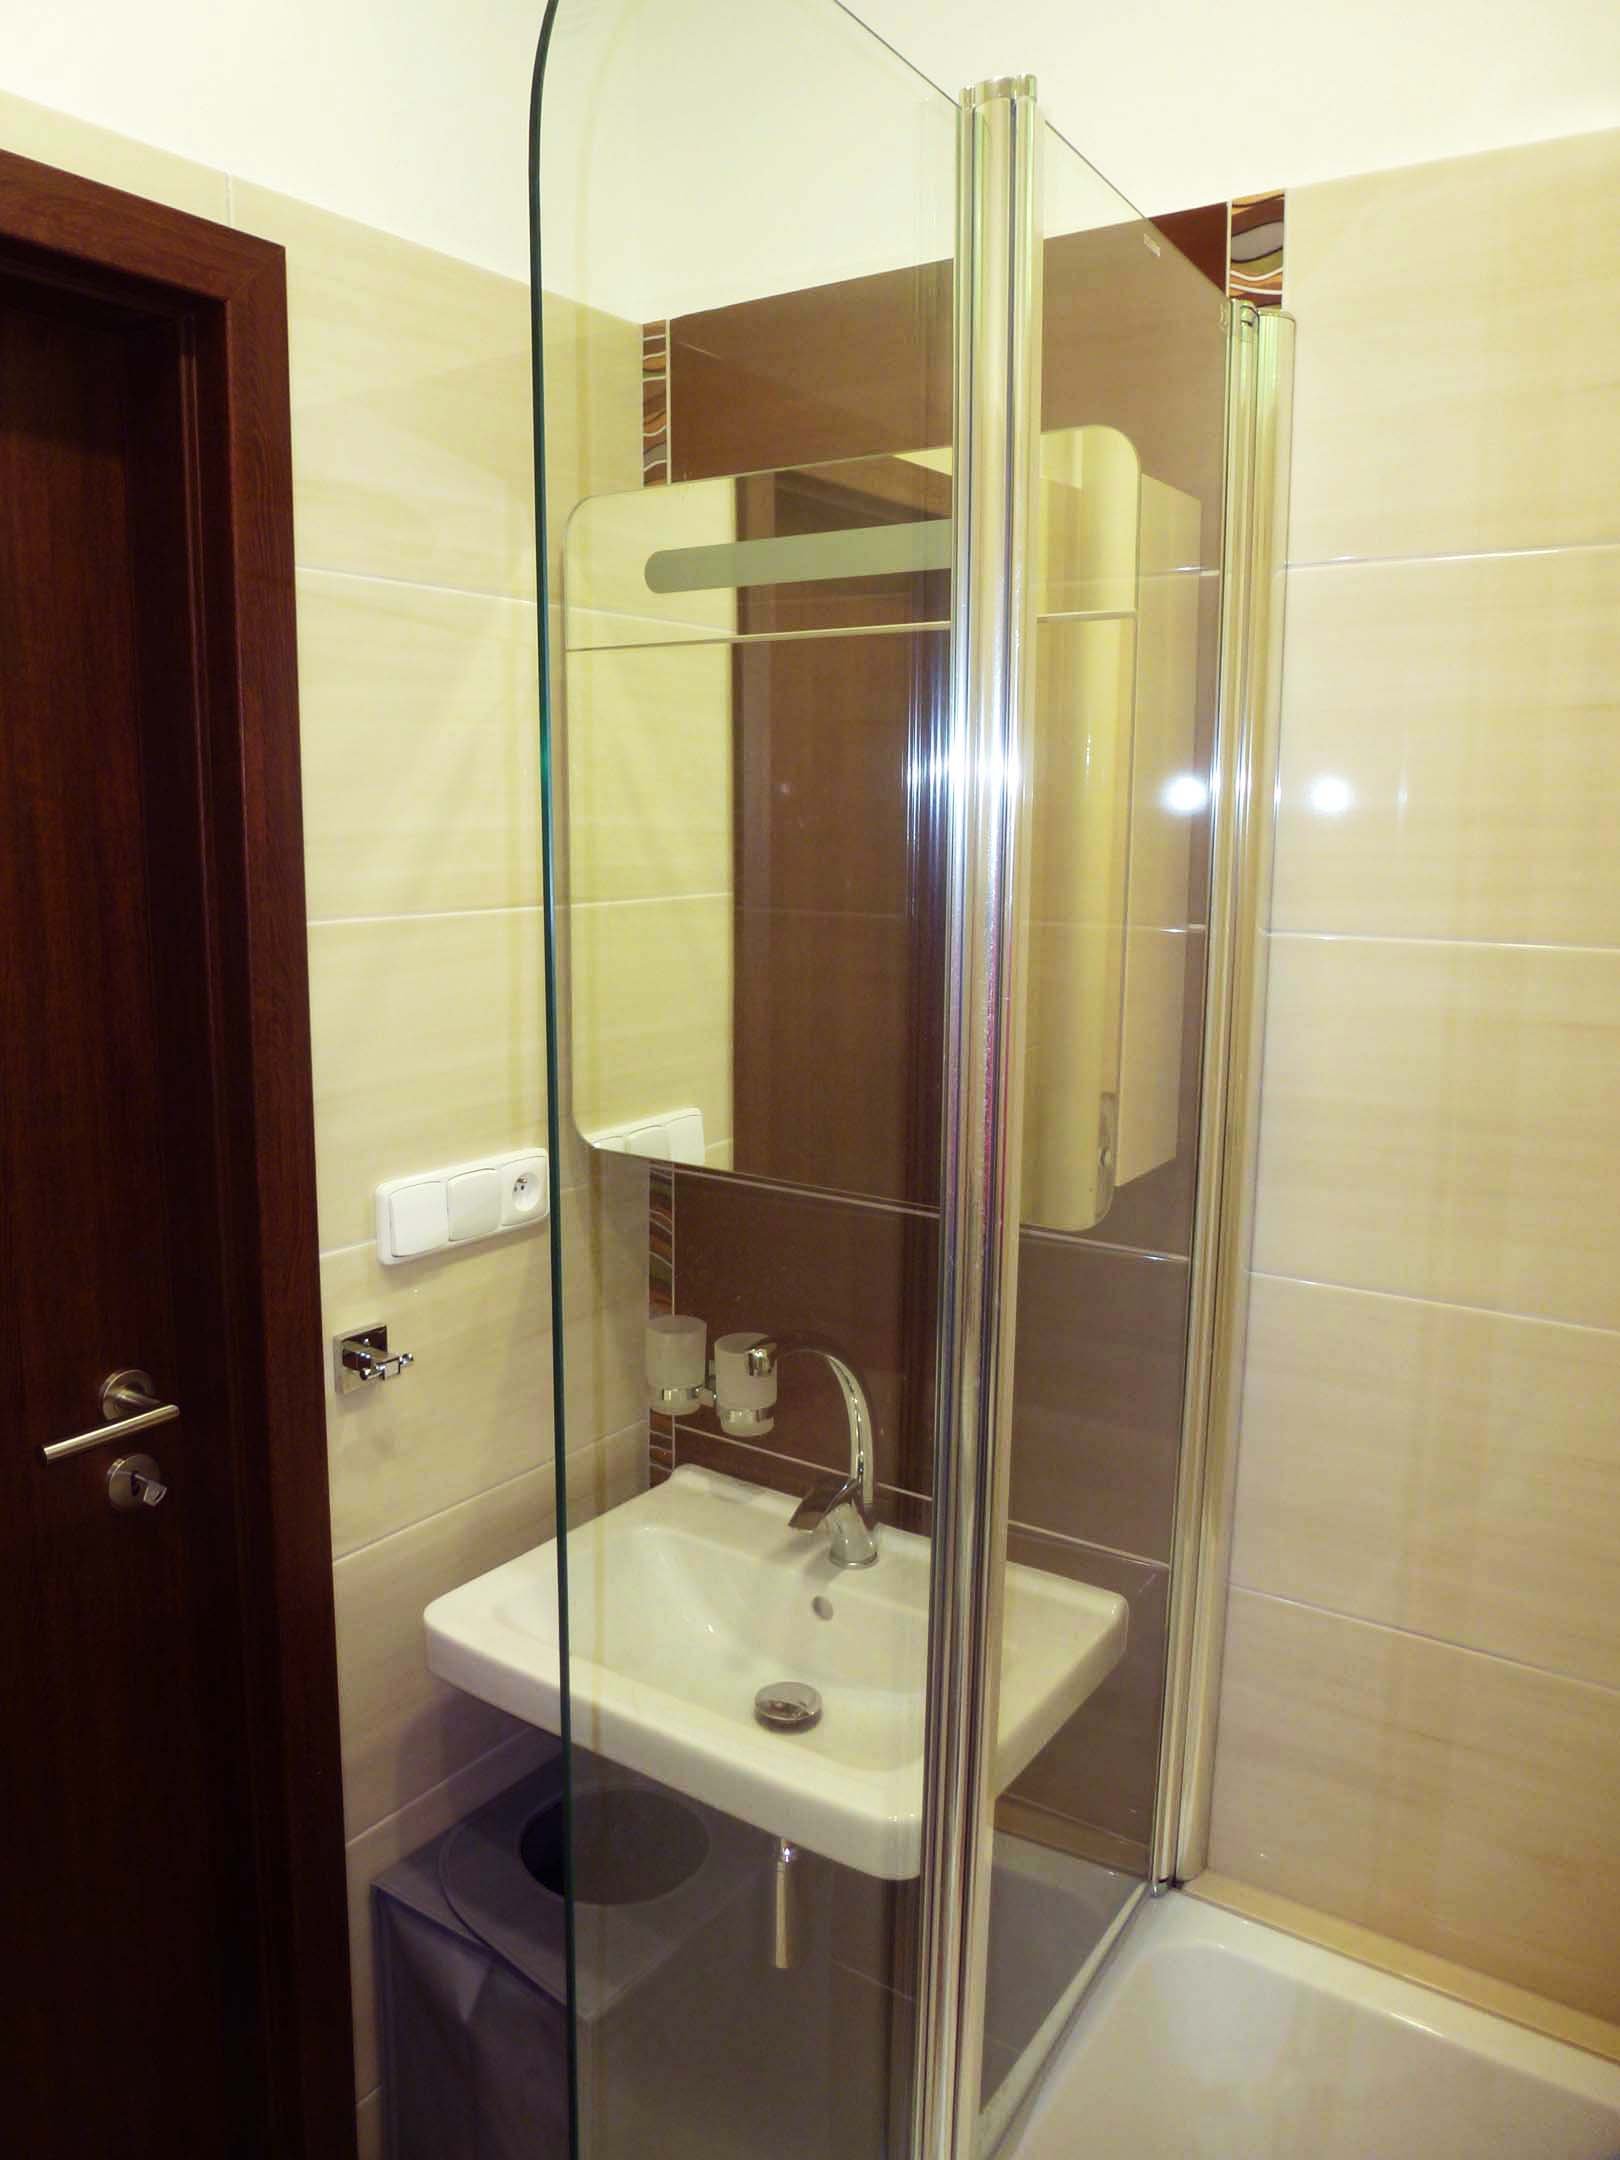 Rekonstrukce koupelny | Plně sklopená vanová zástěna v délce 900 mm má jednu delší (500mm) a jednu kratší část (400mm), výška je 1400 mm | Koupelny-svitavy.cz